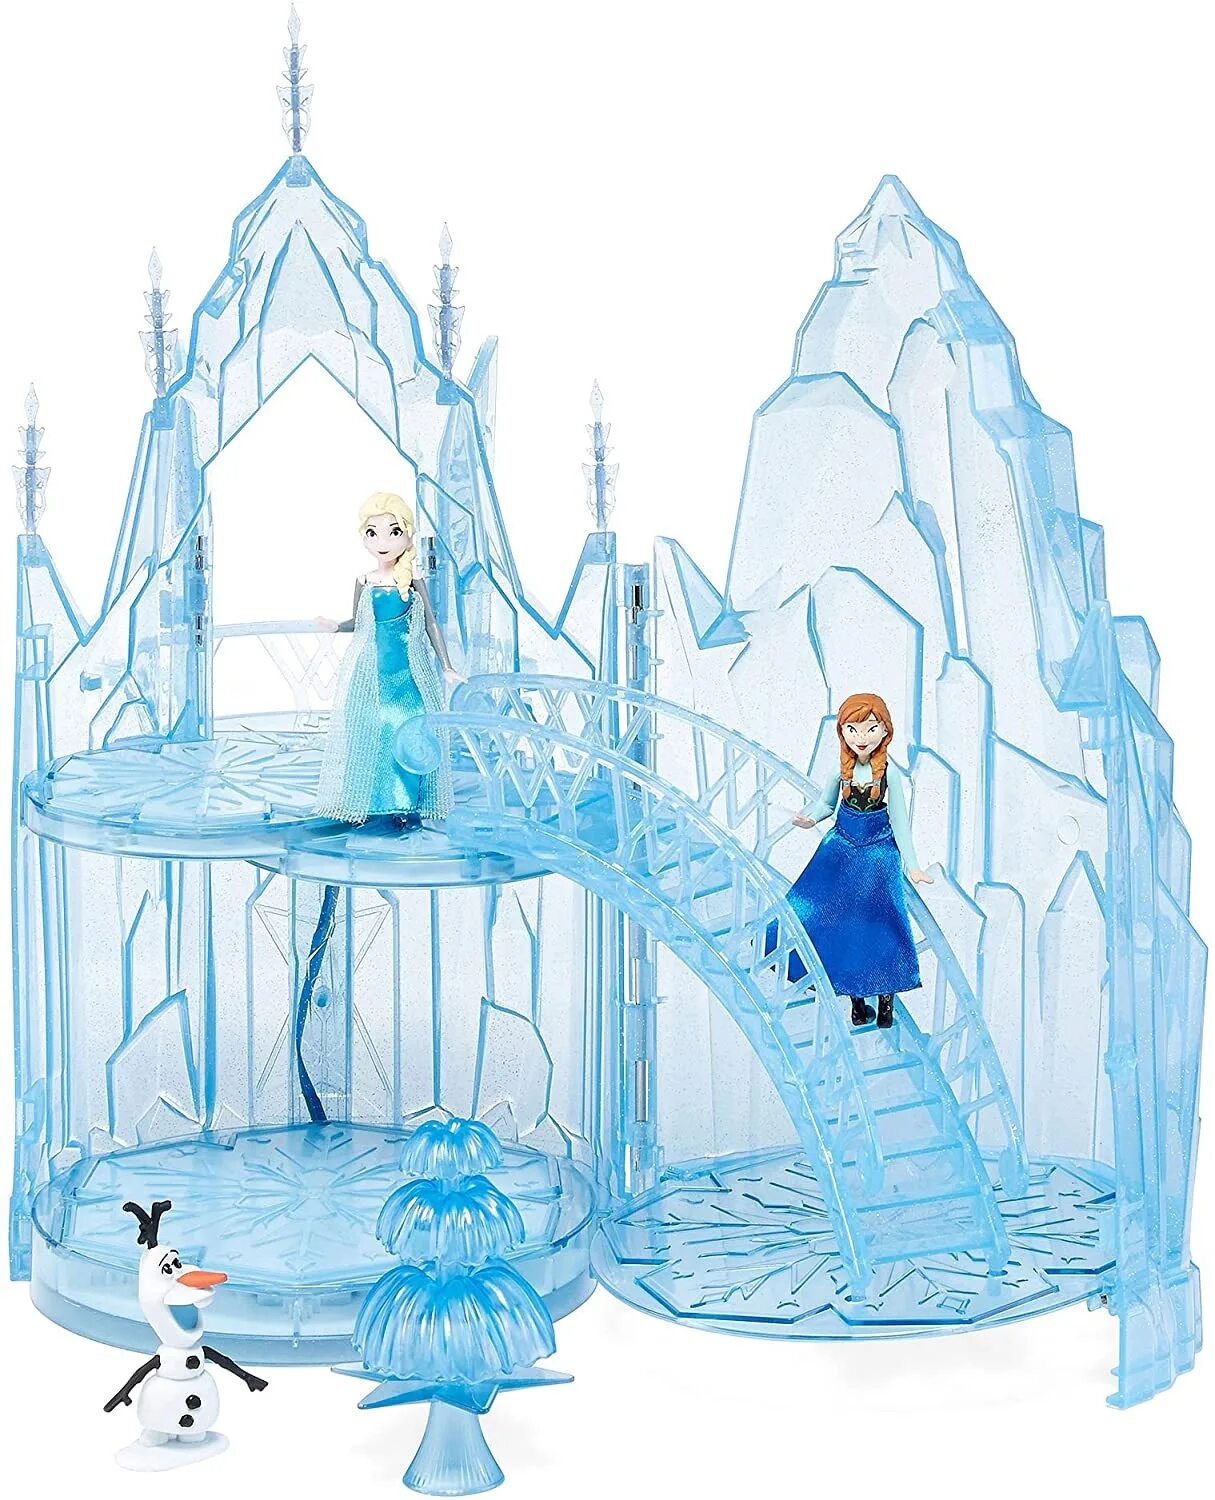 Elsa's castle #1